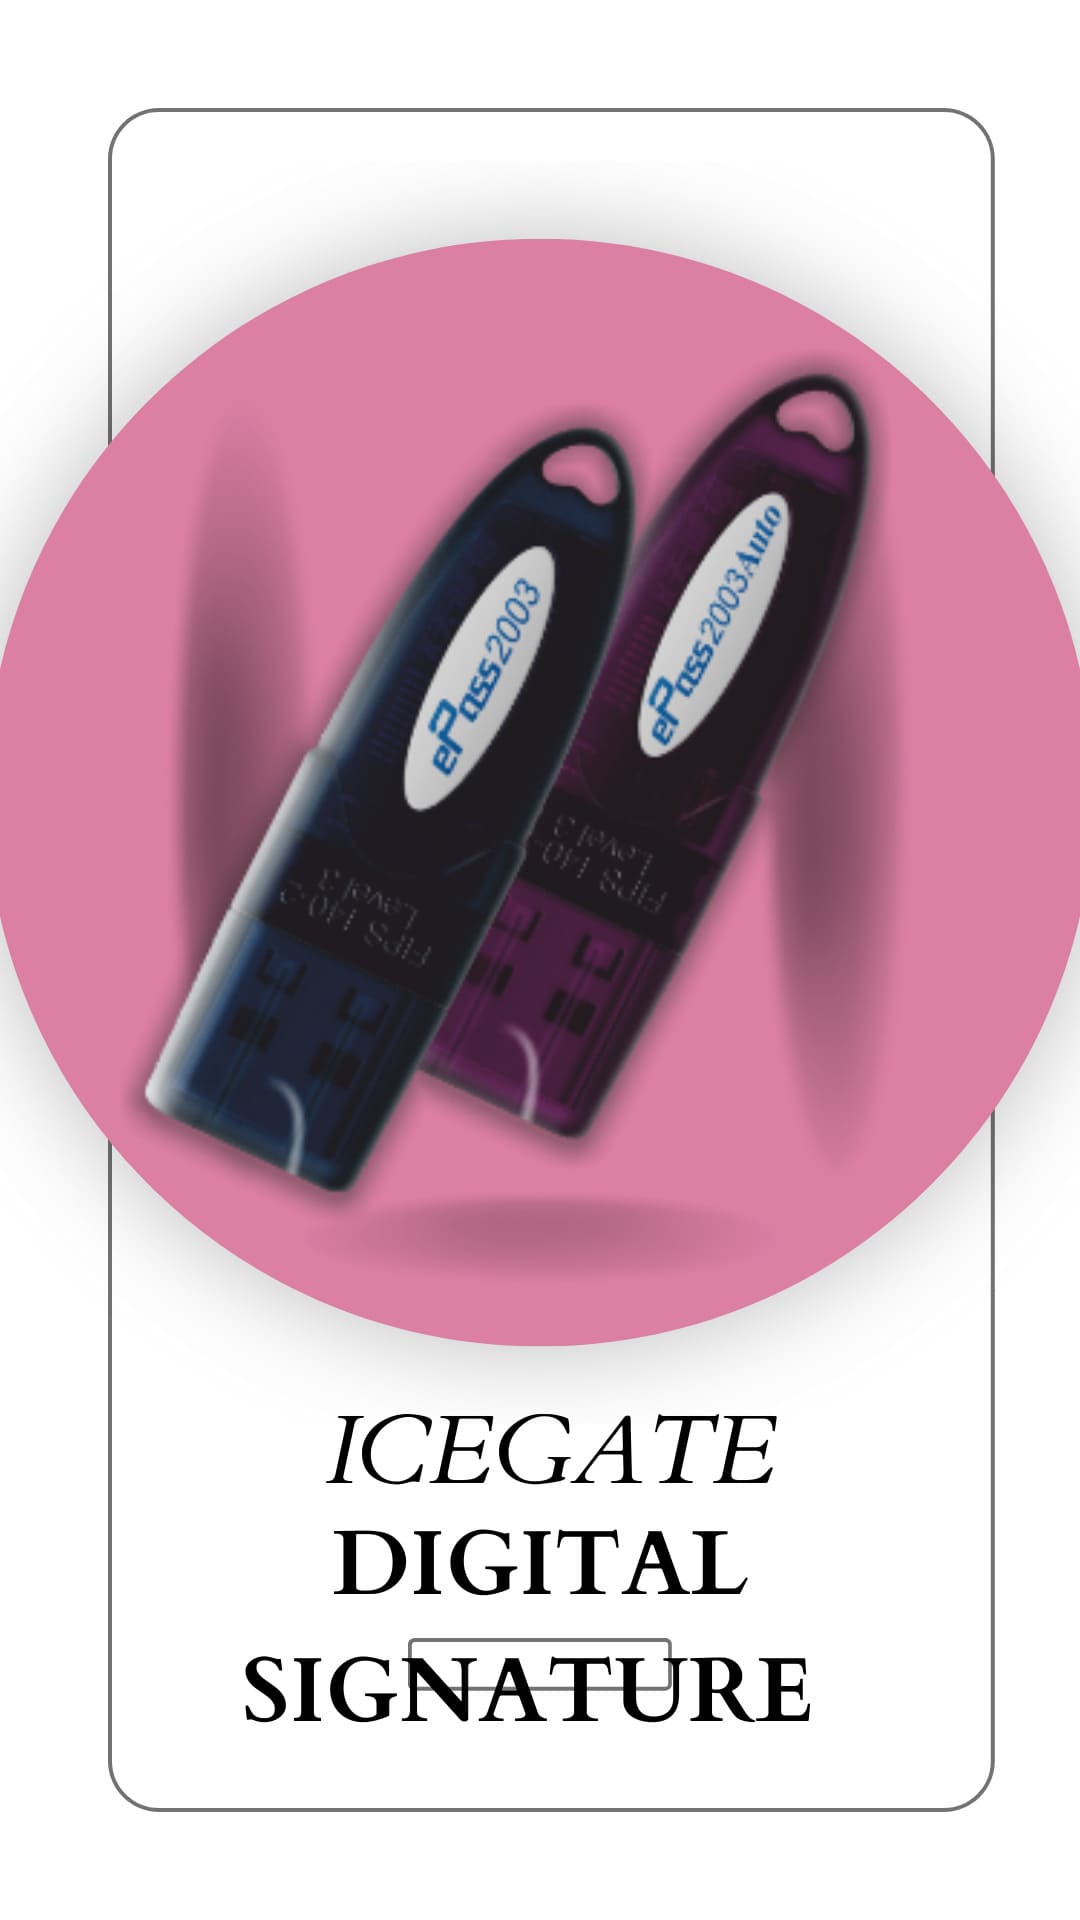 How do I get a digital signature for Icegate